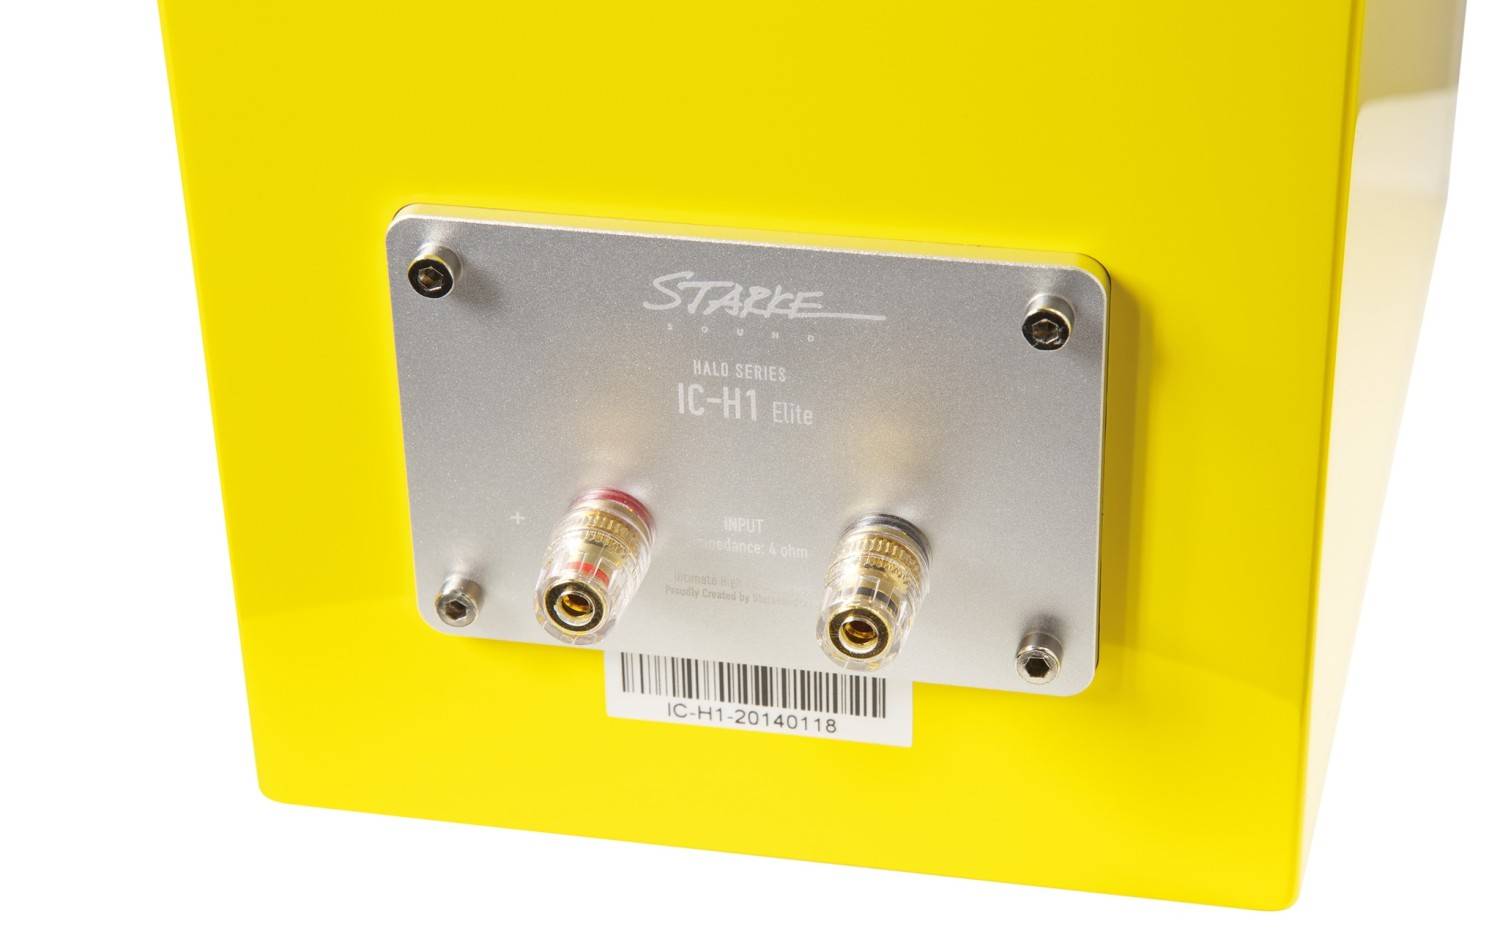 Lautsprecher Stereo Starke Sound IC-H1 Elite im Test, Bild 9